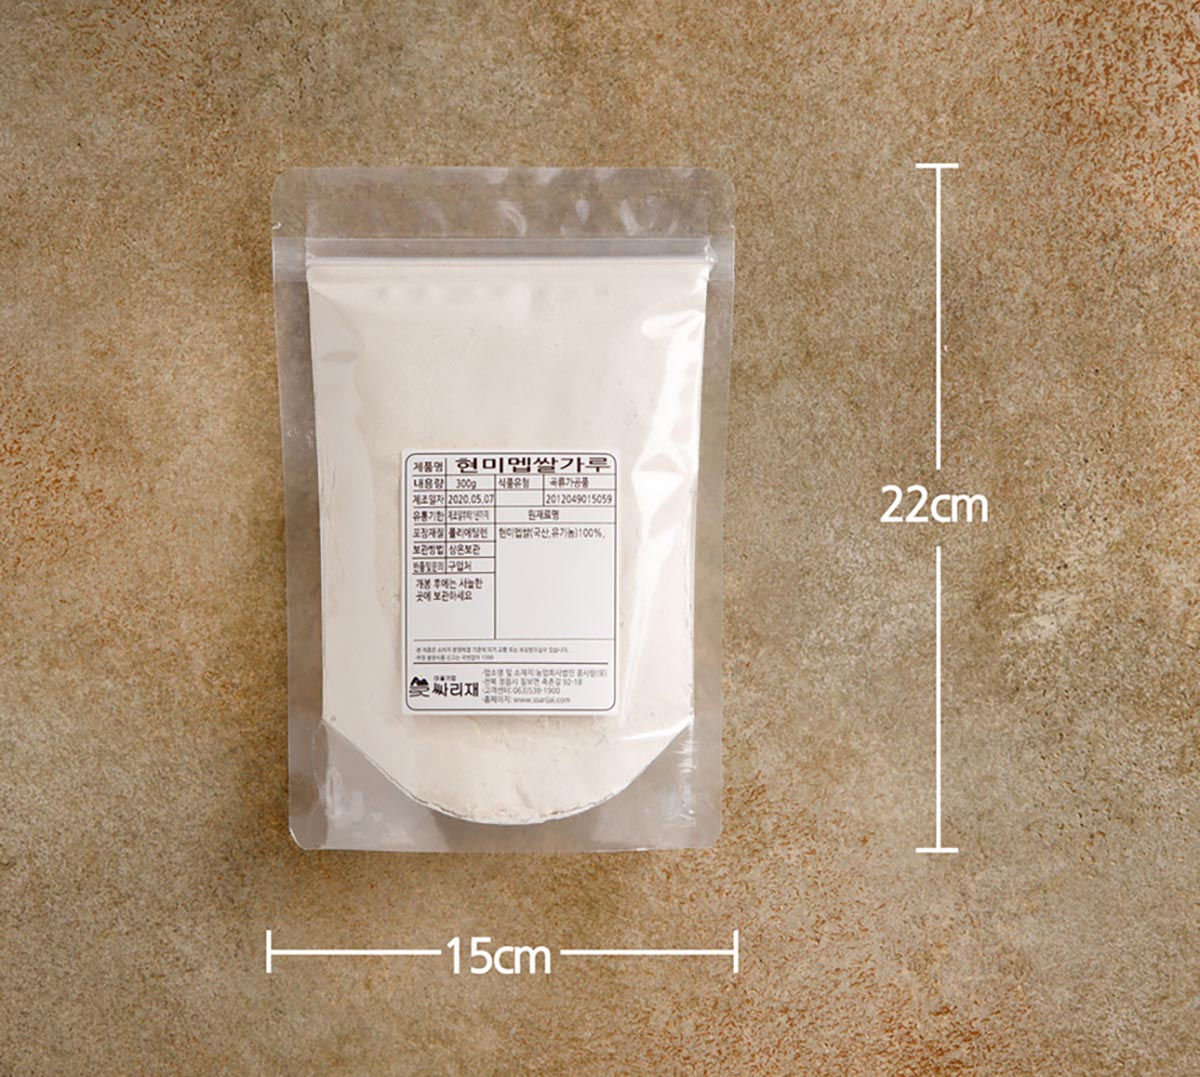 투명한 지퍼 포장지에 하얀 쌀가루를 담아 포장한 제품을 테이블에 놓은 모습.